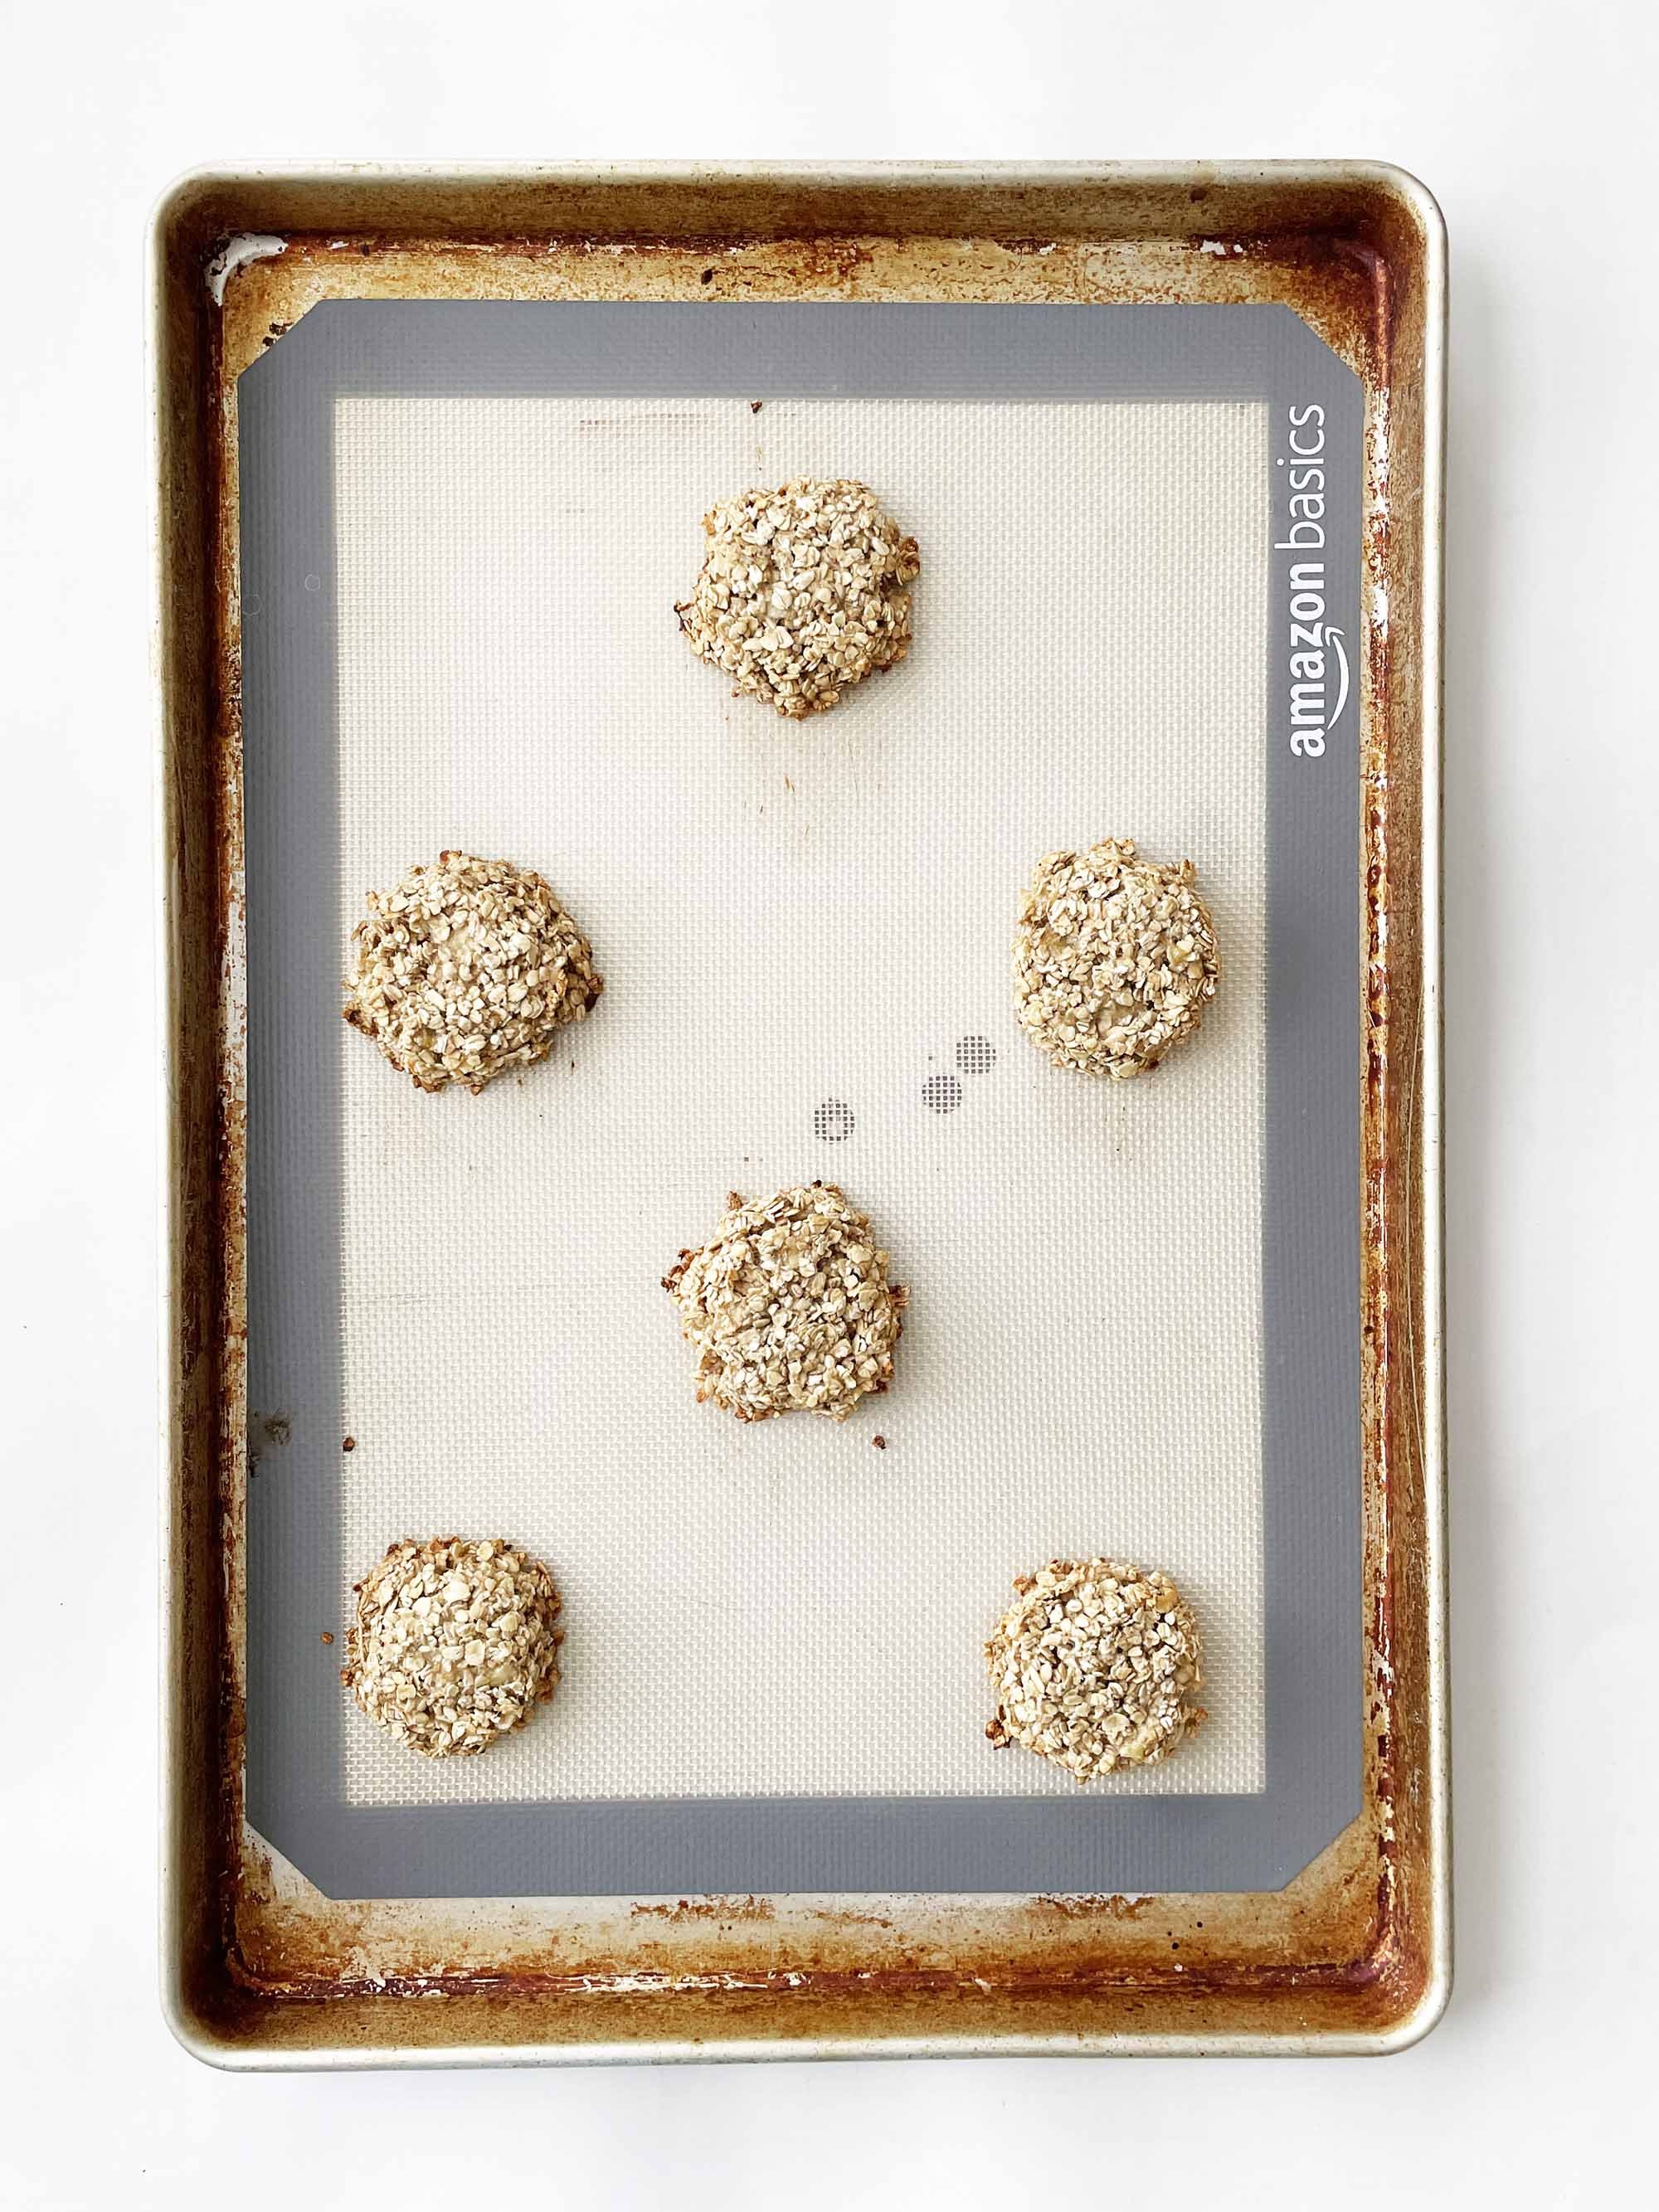 2-ingredient-cookies4.jpg